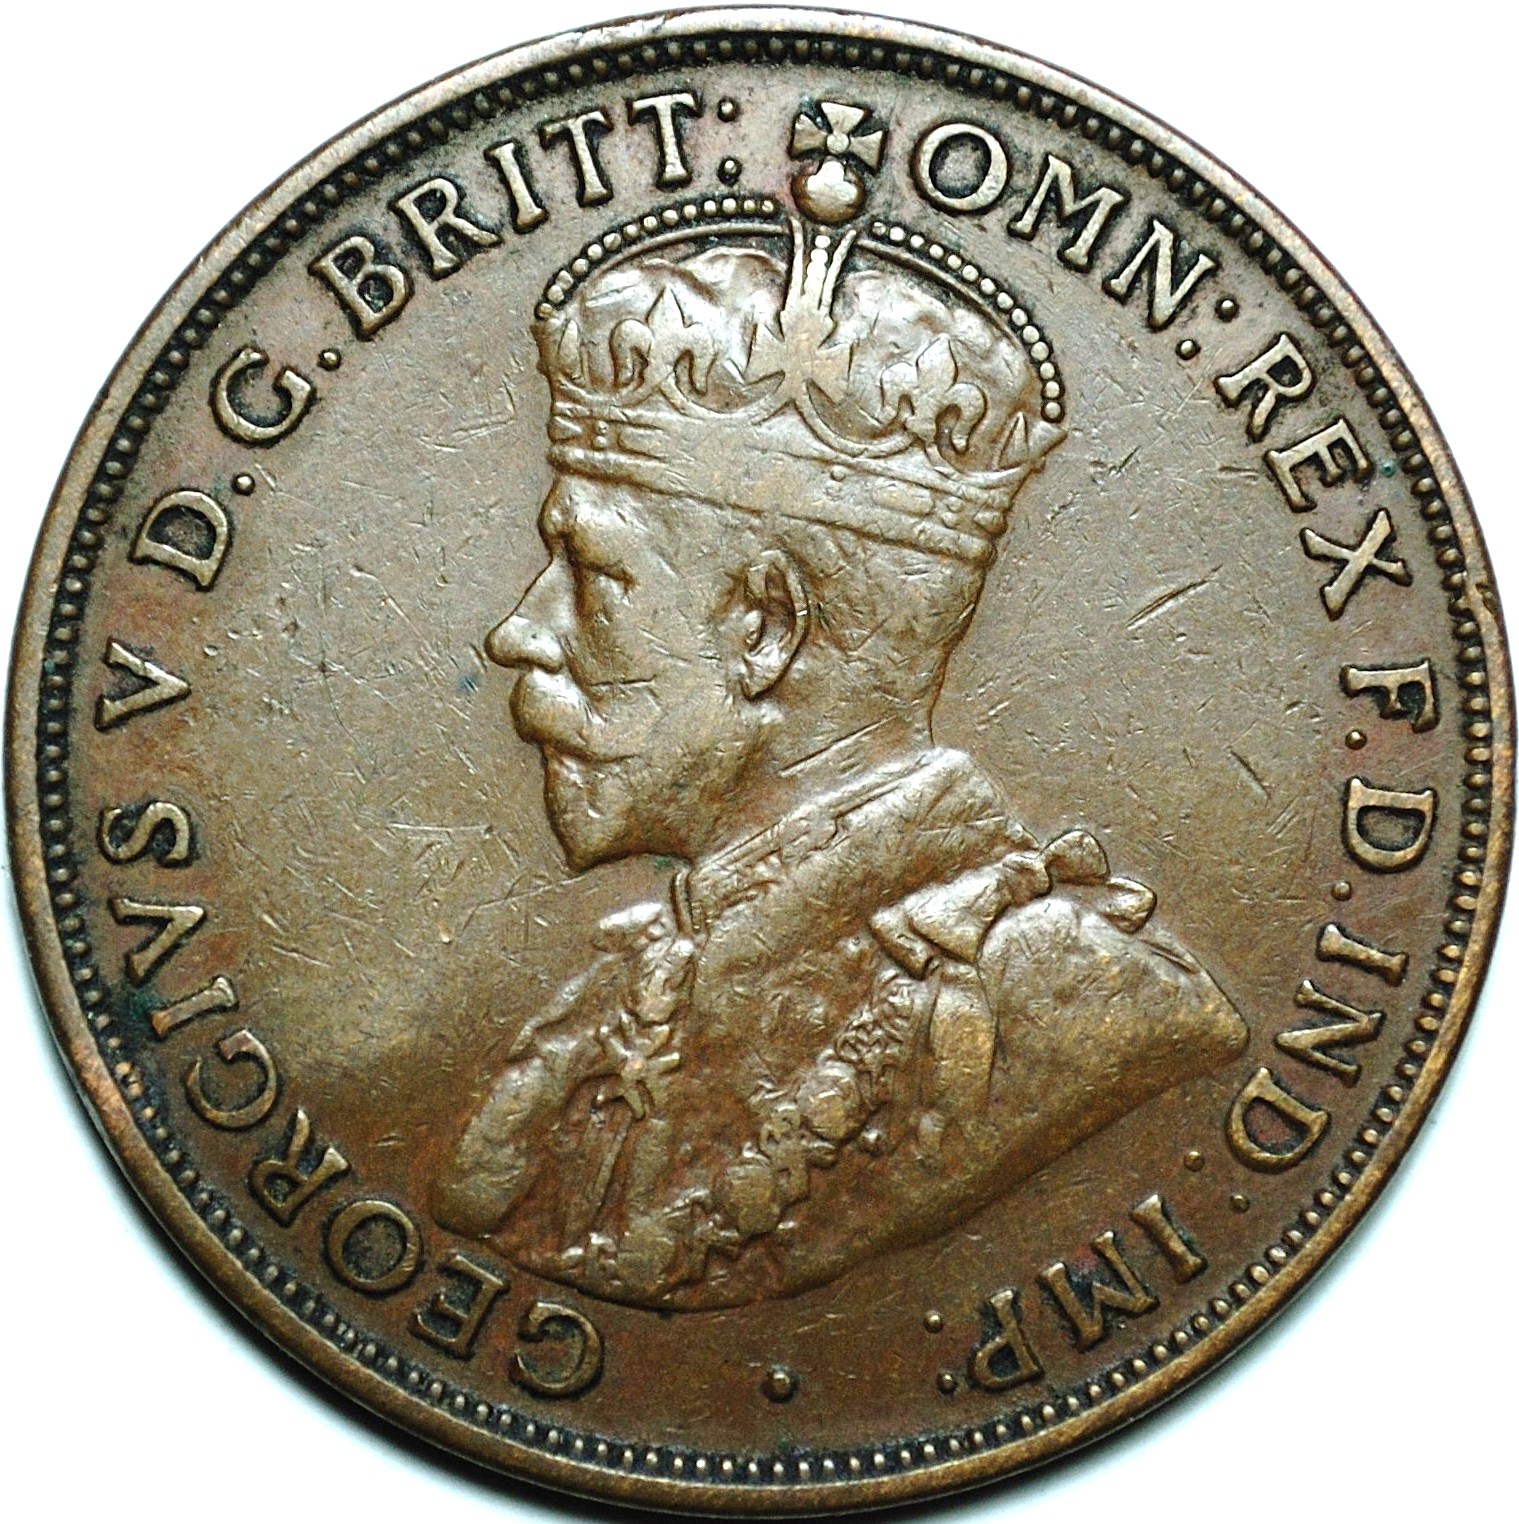 1918 Australian penny obverse